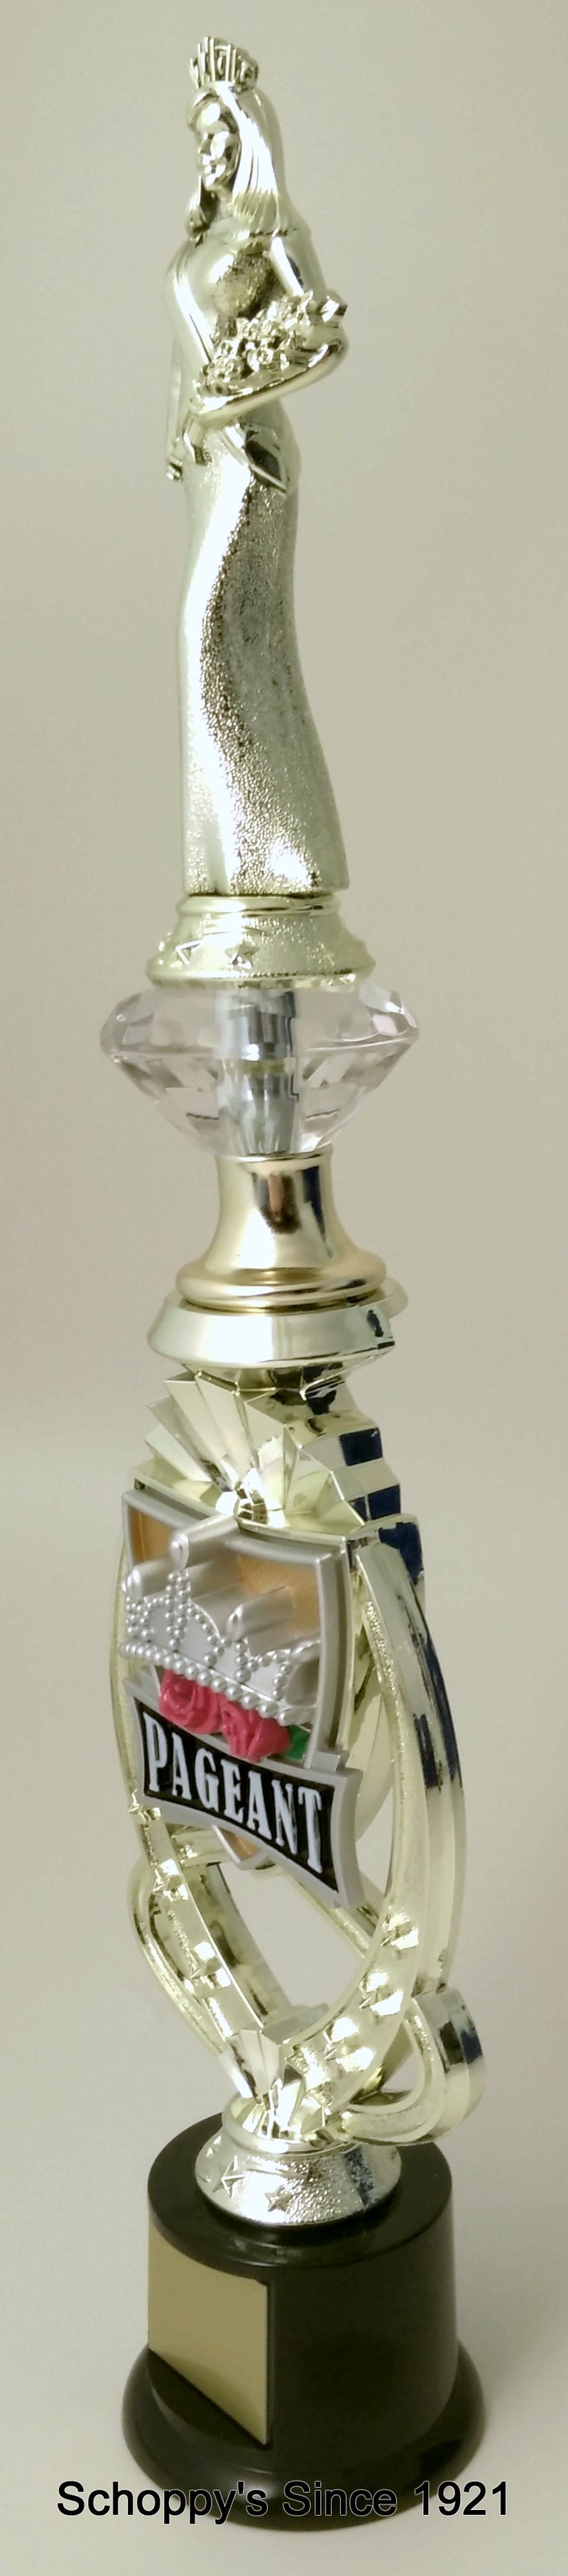 Pageant Senior Riser Trophy-Trophies-Schoppy&